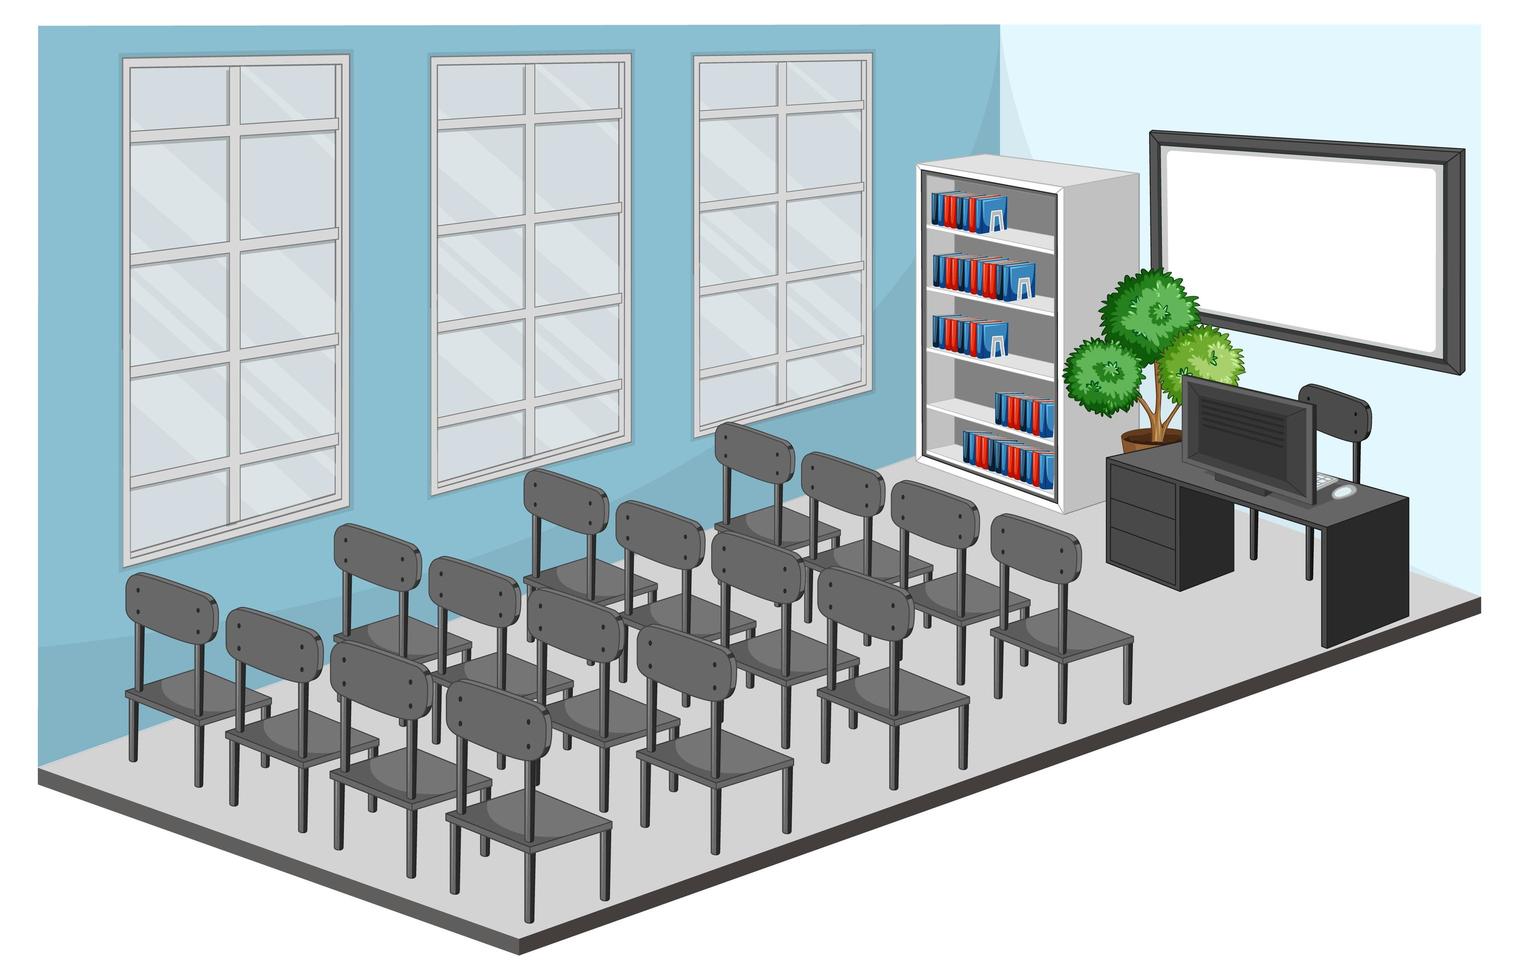 Besprechungsraum oder Klassenzimmer mit Möbeln vektor